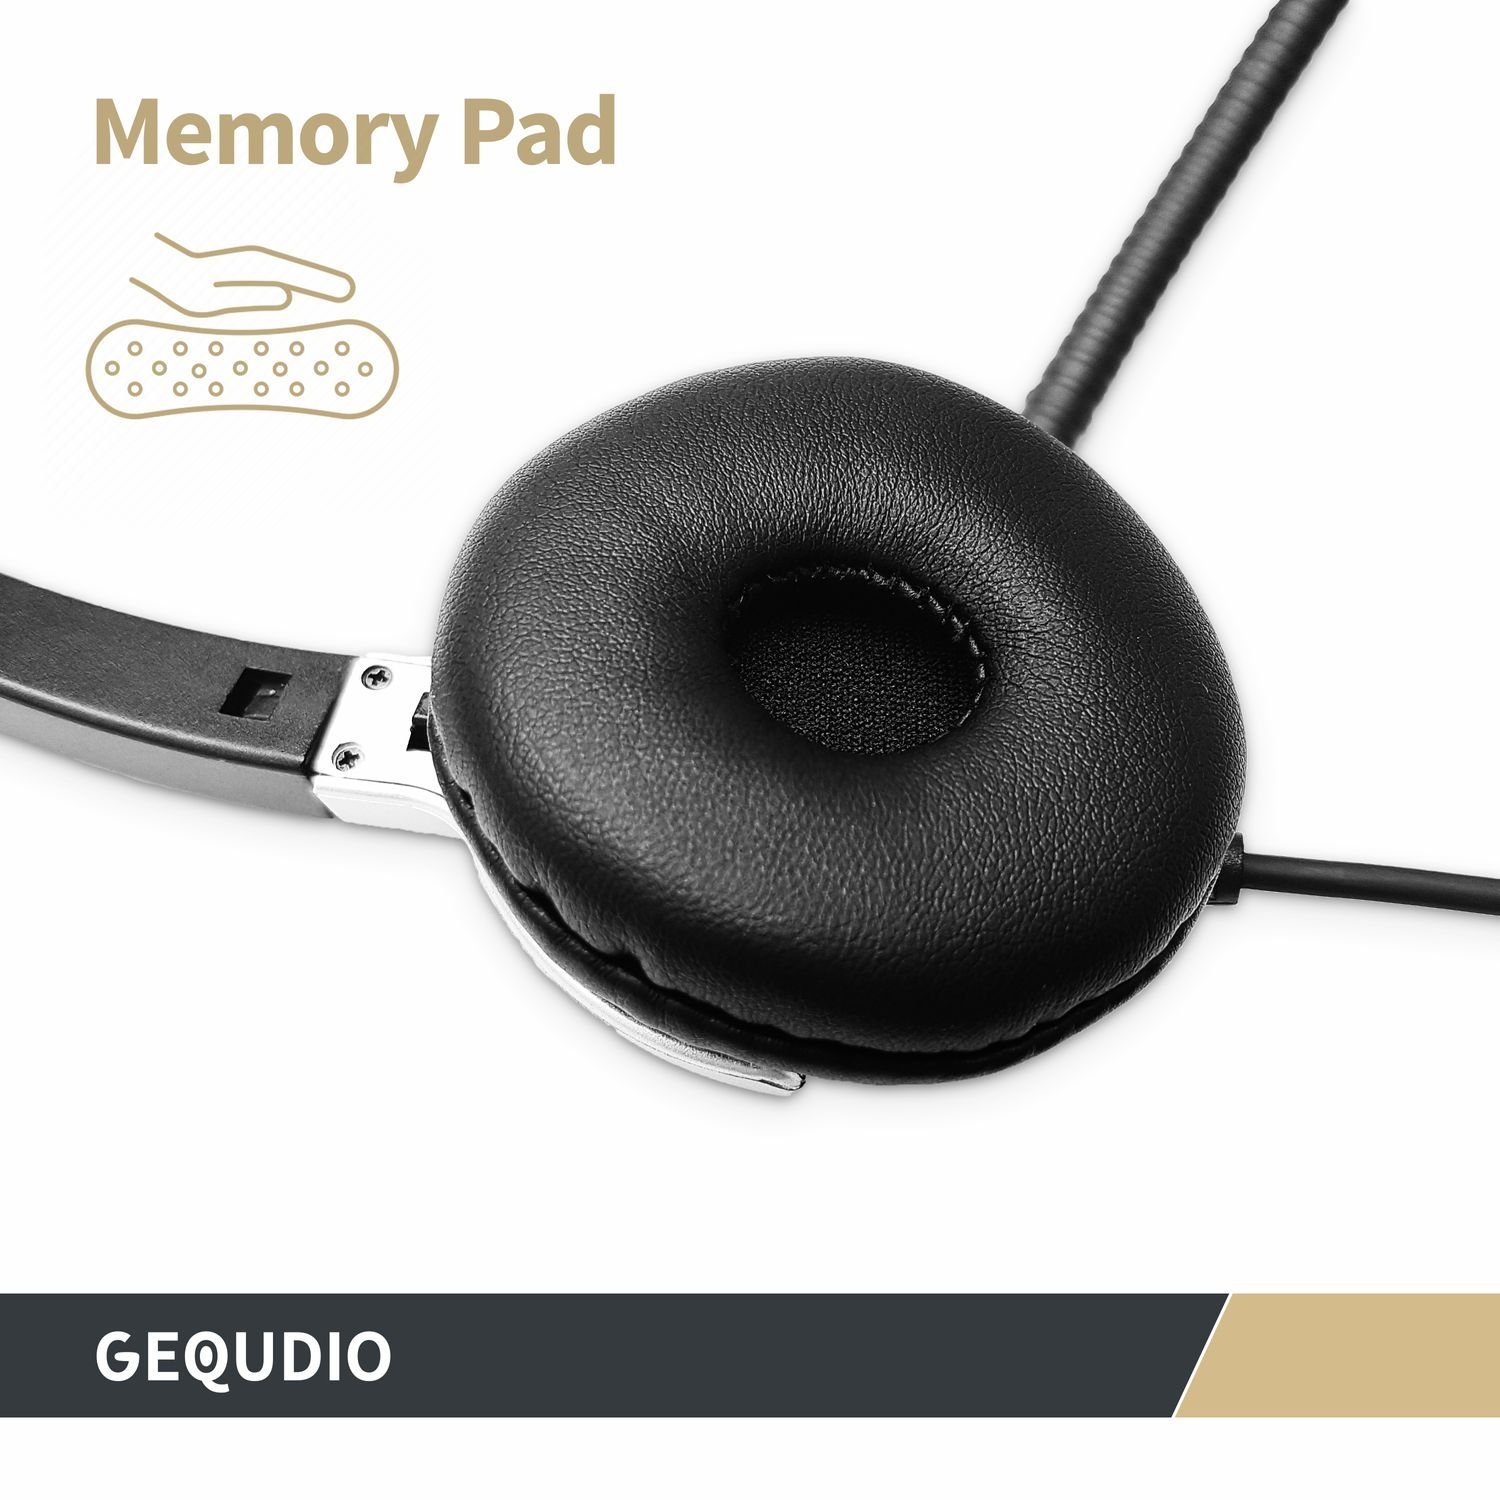 Endgeräte, Mac und Adapter für leicht, GEQUDIO Smartphone Headset mit inklusive Federstahl, PC, für und mehrere USB-A, aus USB-C (2-Ohr-Headset, Wechselverschluss 80g Anschlusskabel) Bügel mit Klinke 3,5mm